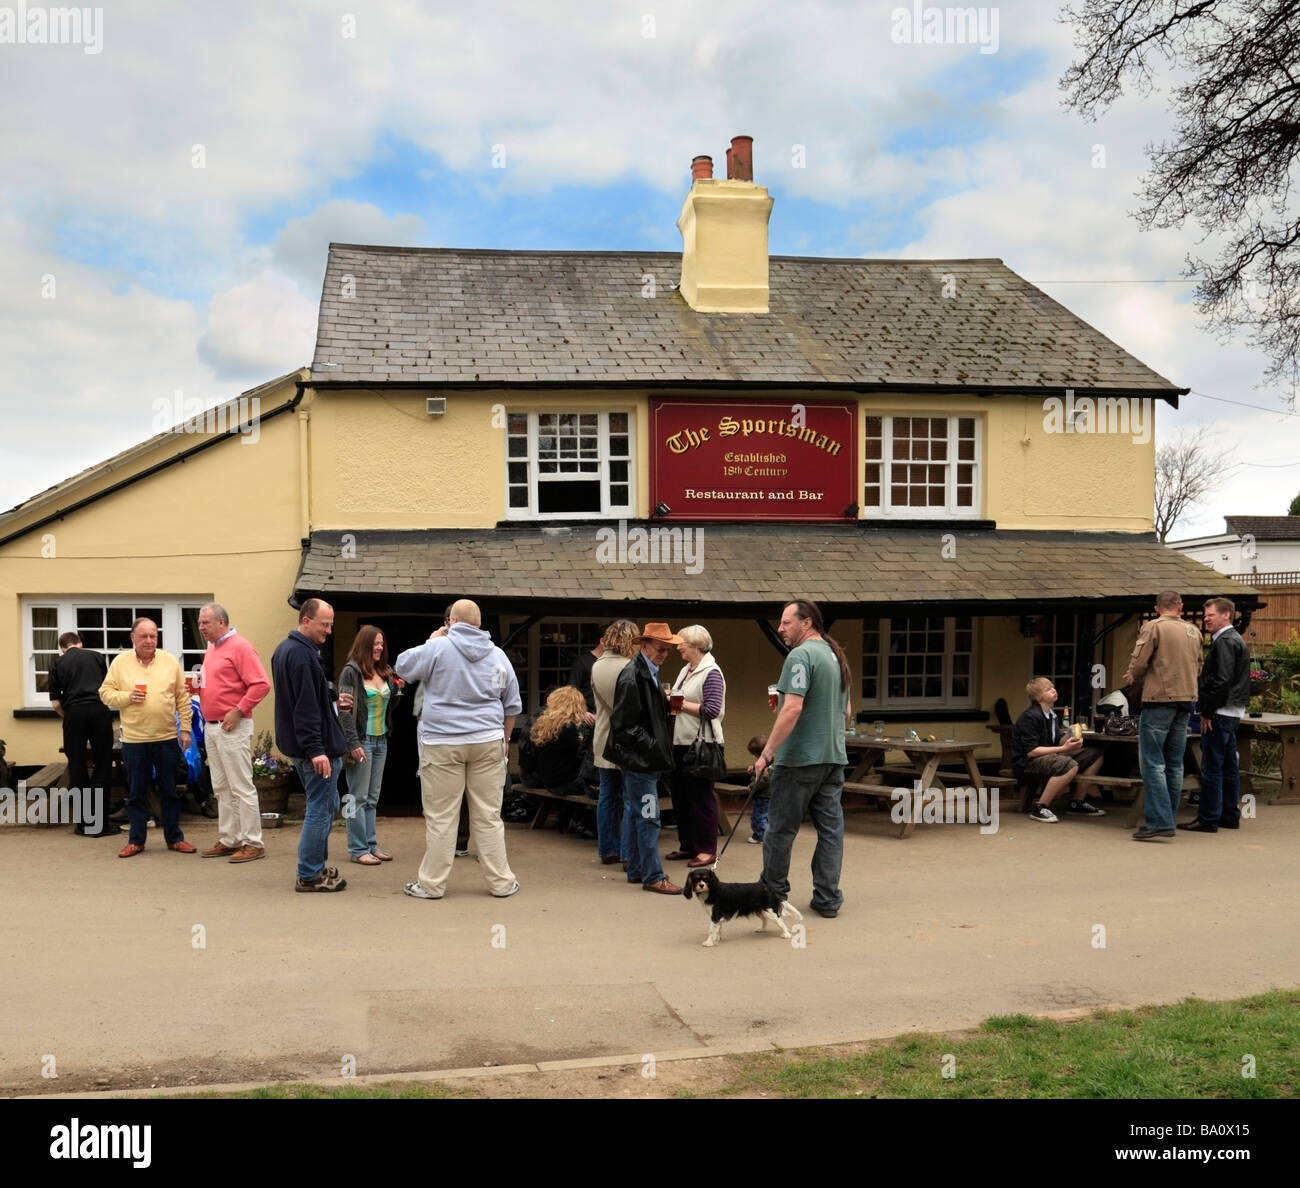 Les gens de prendre un verre à l'extérieur de la maison publique sportif, caritatif ayant repris, Surrey. Banque D'Images